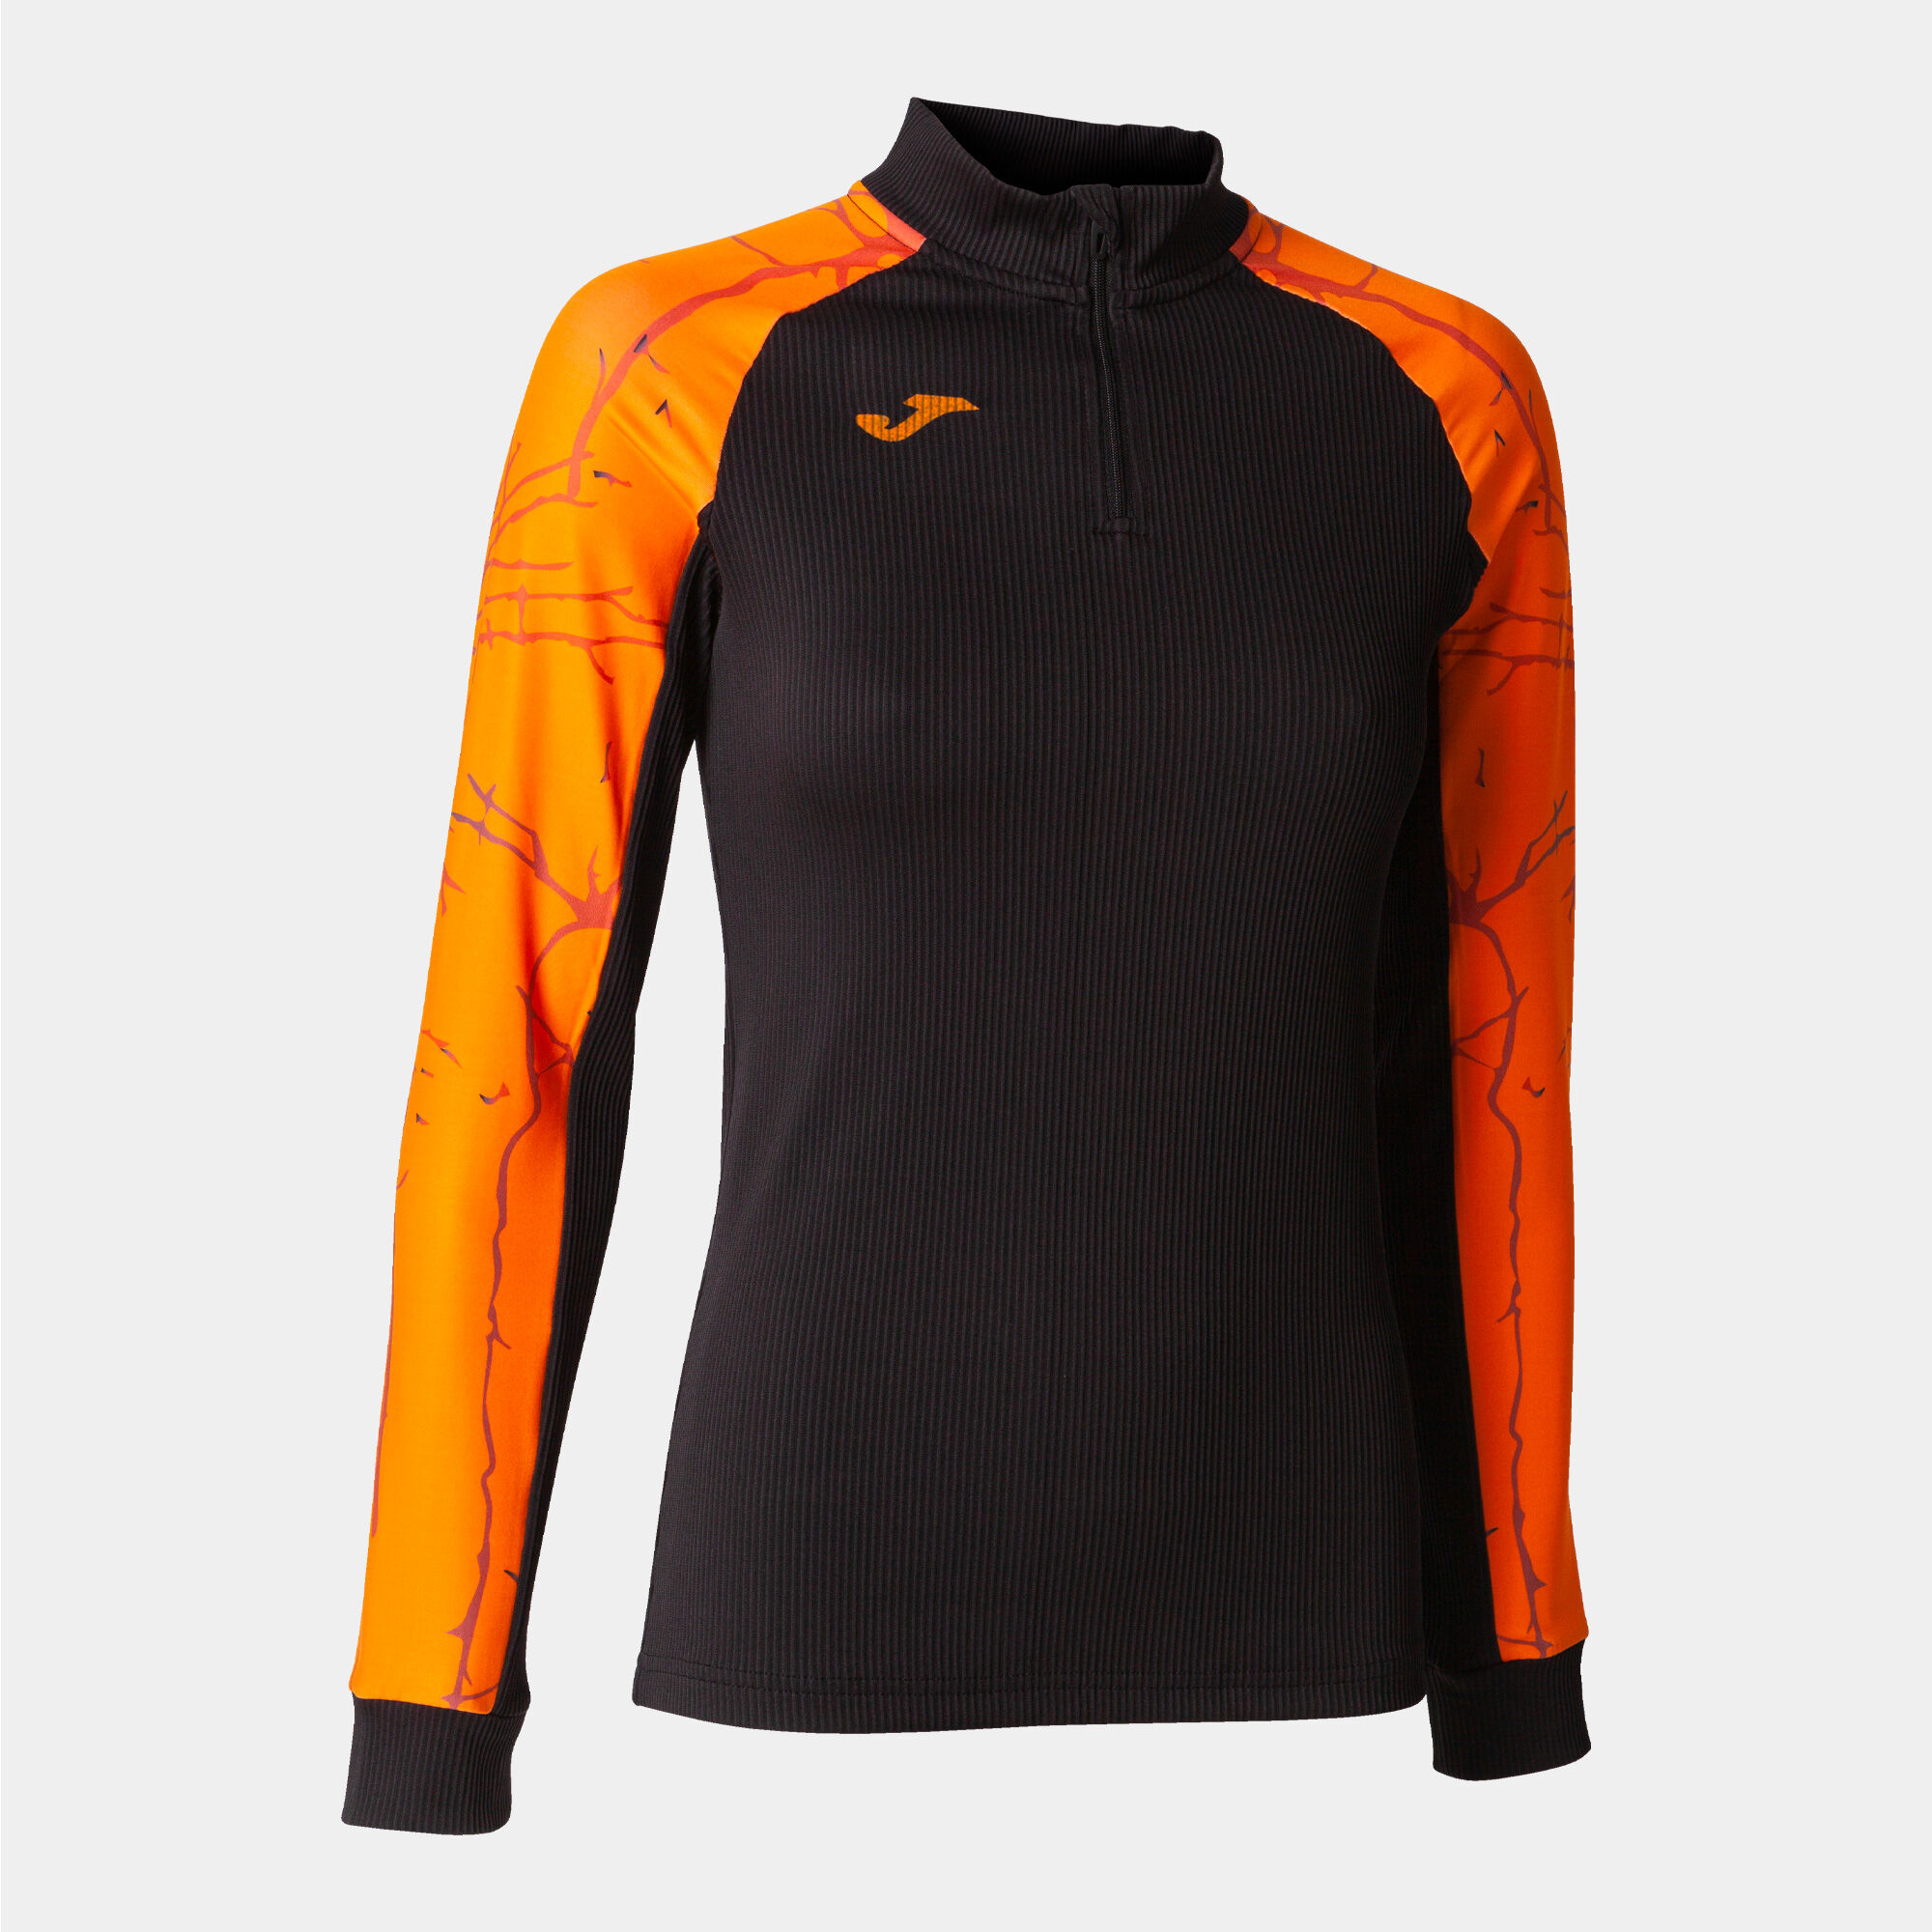 Sweat-shirt femme Elite IX noir orange